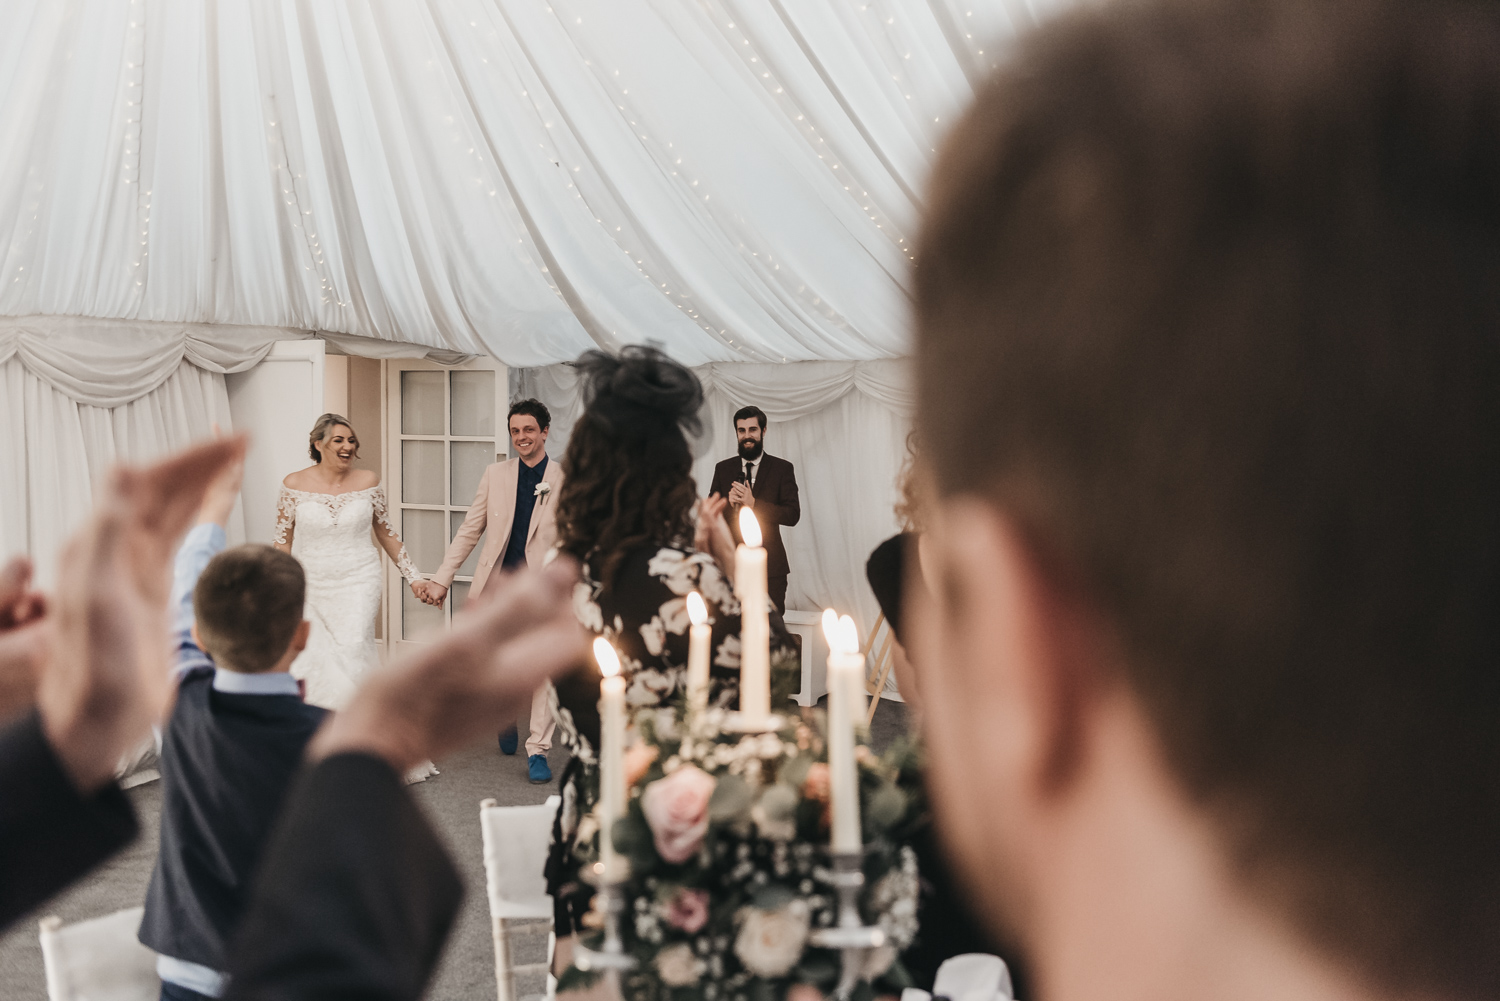 Wedding guests applaunding